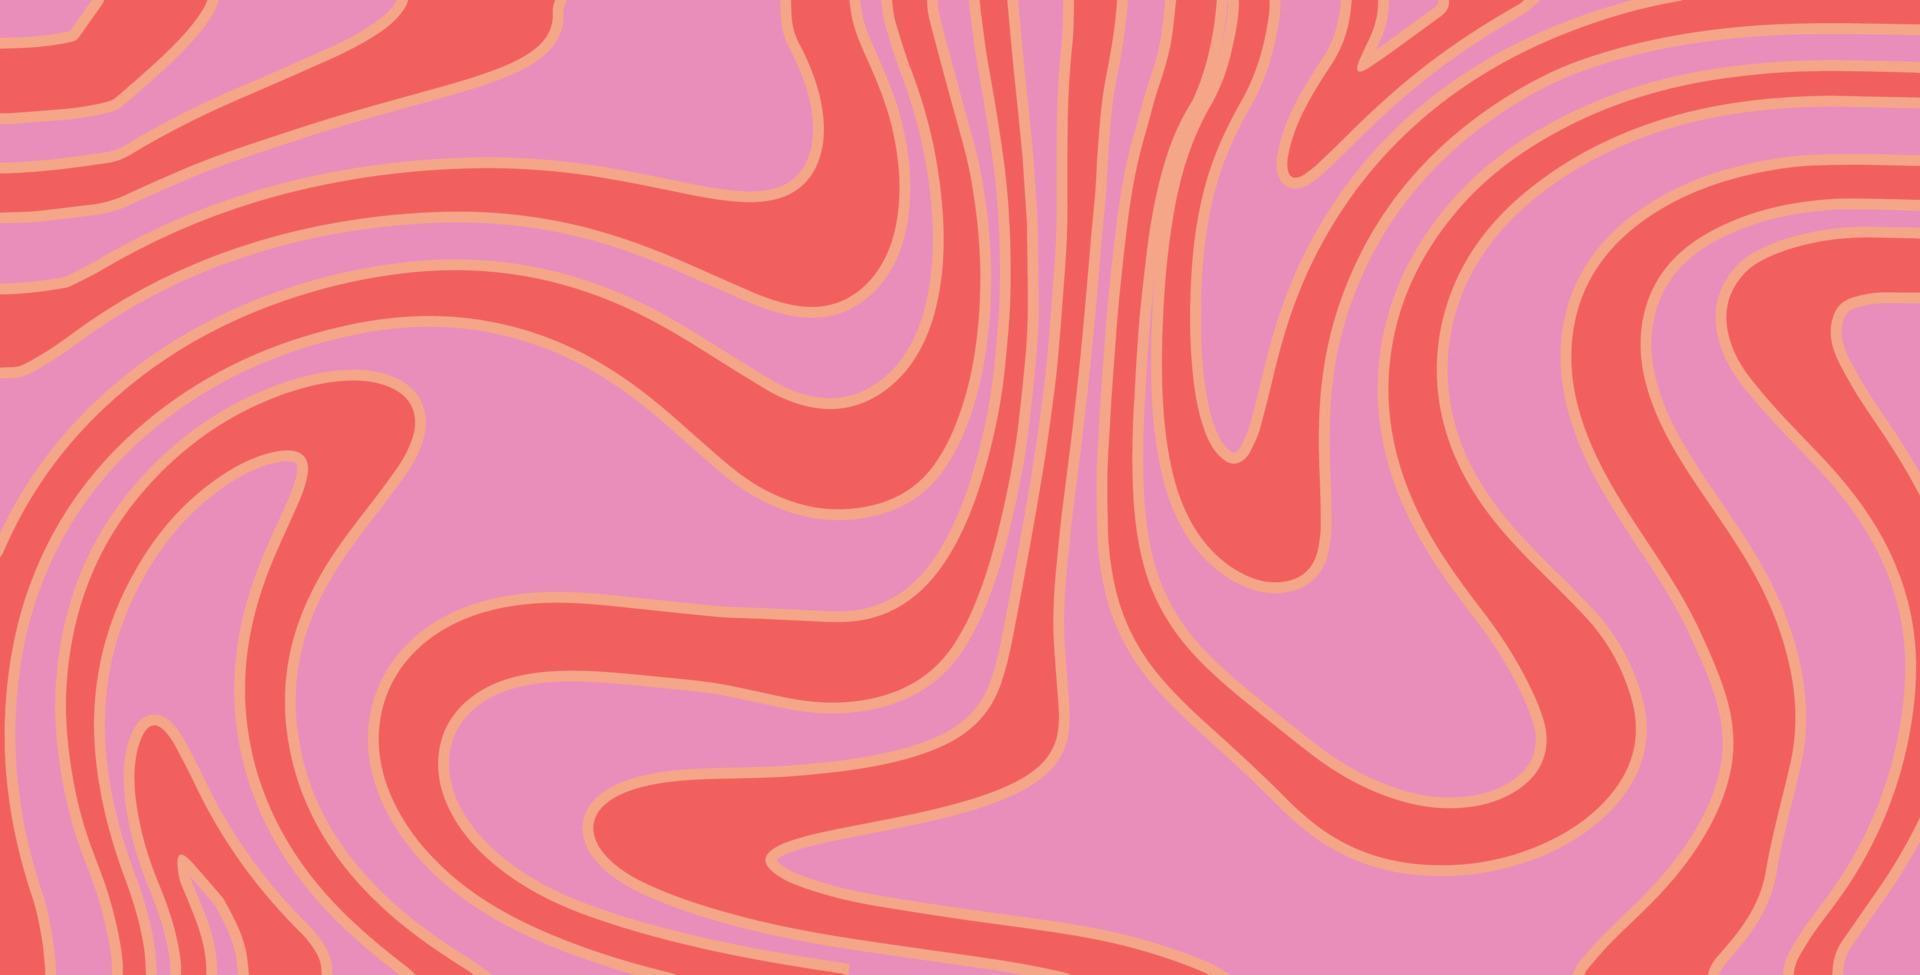 motif groovy tourbillon ondulé sur les couleurs rouges et roses. style années 70, fond hippie, fond d'écran vague psychédélique. illustration vectorielle plane dessinée à la main vecteur